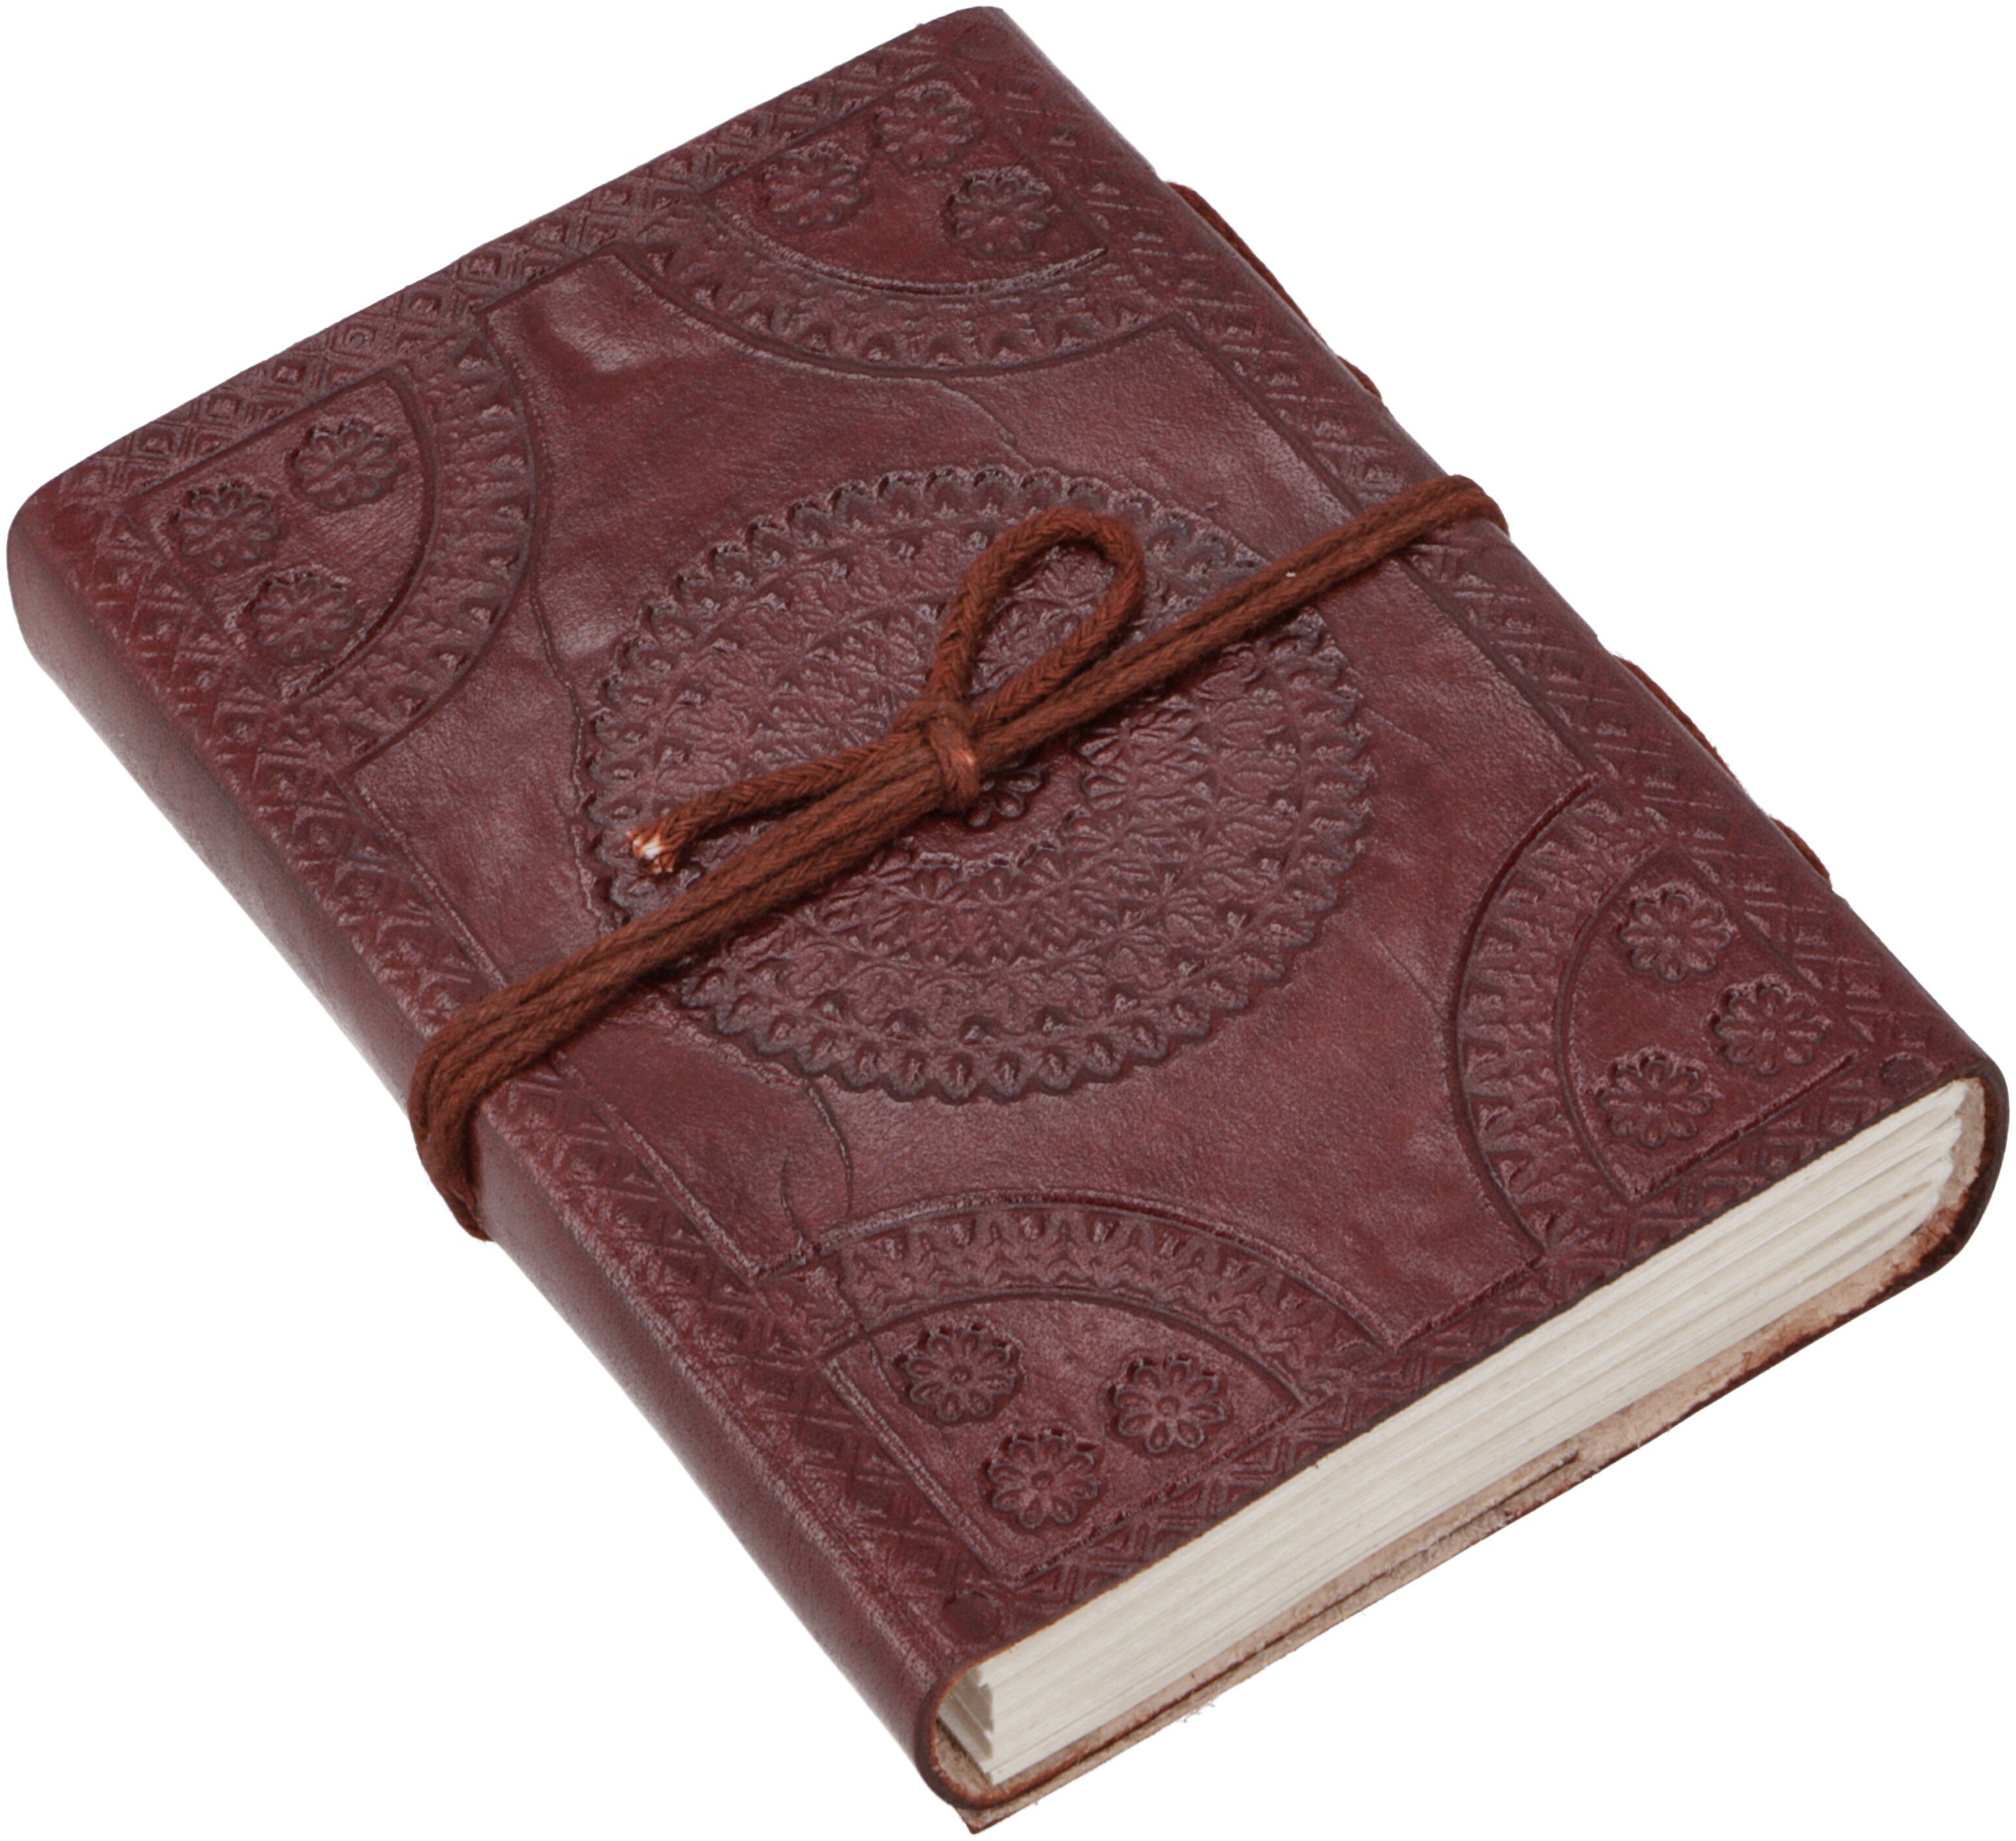 9*12 Tagebuch mit Guru-Shop Buddha/ Tagebuch Notizbuch, Lederbuch, Ledereinband.. cm